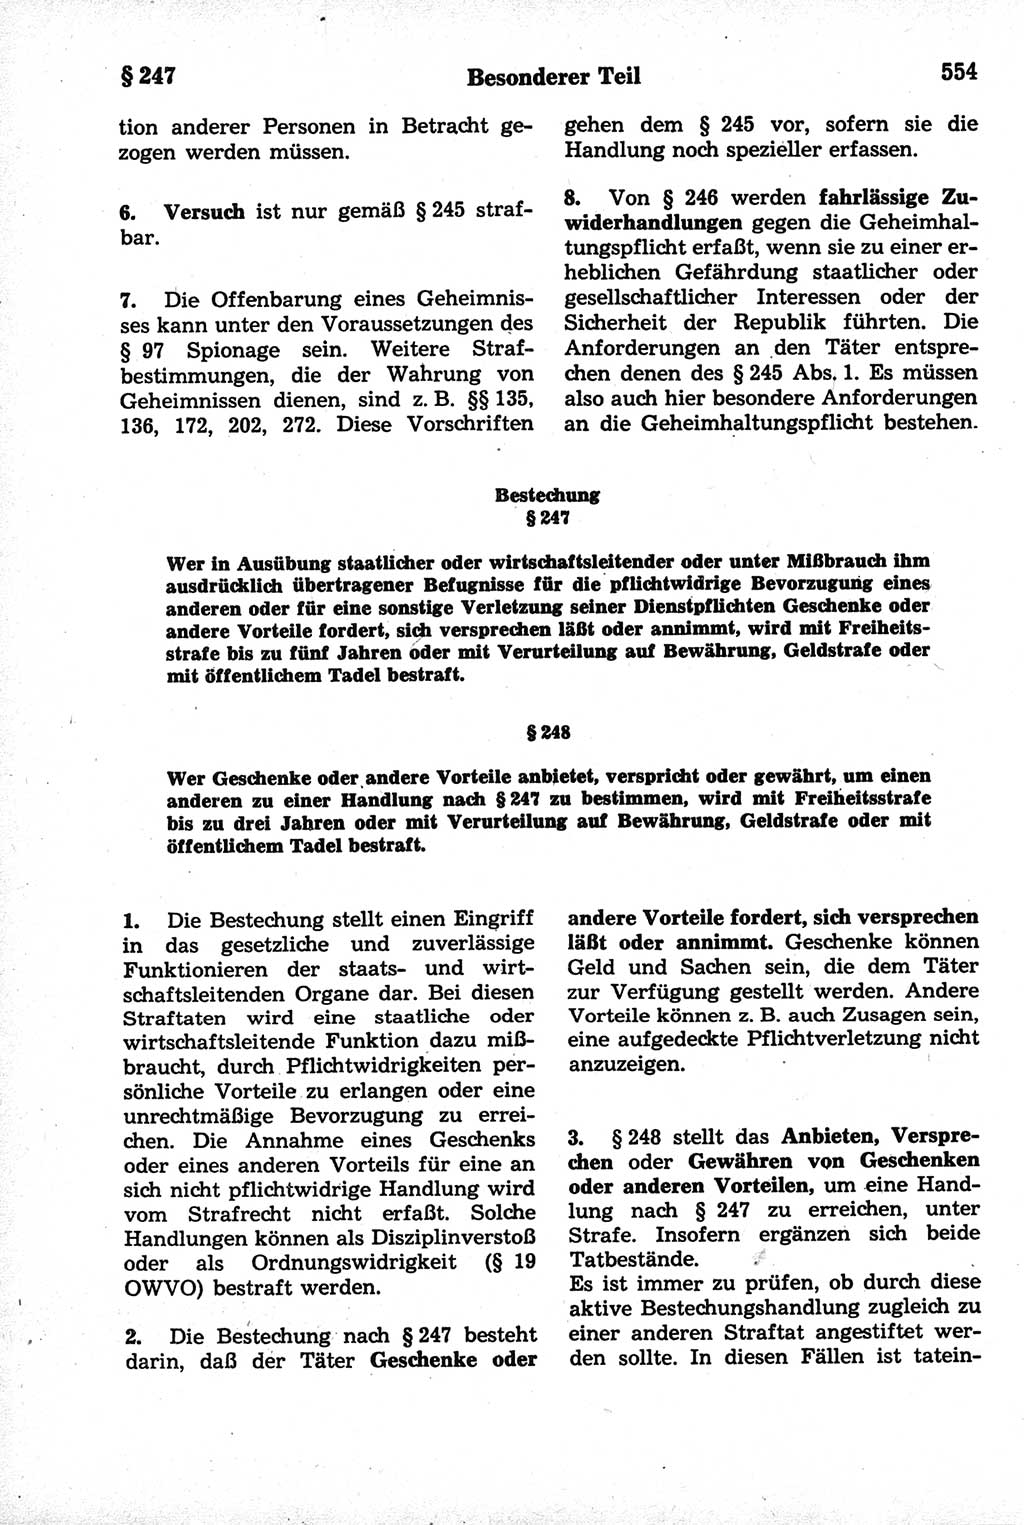 Strafrecht der Deutschen Demokratischen Republik (DDR), Kommentar zum Strafgesetzbuch (StGB) 1981, Seite 554 (Strafr. DDR Komm. StGB 1981, S. 554)